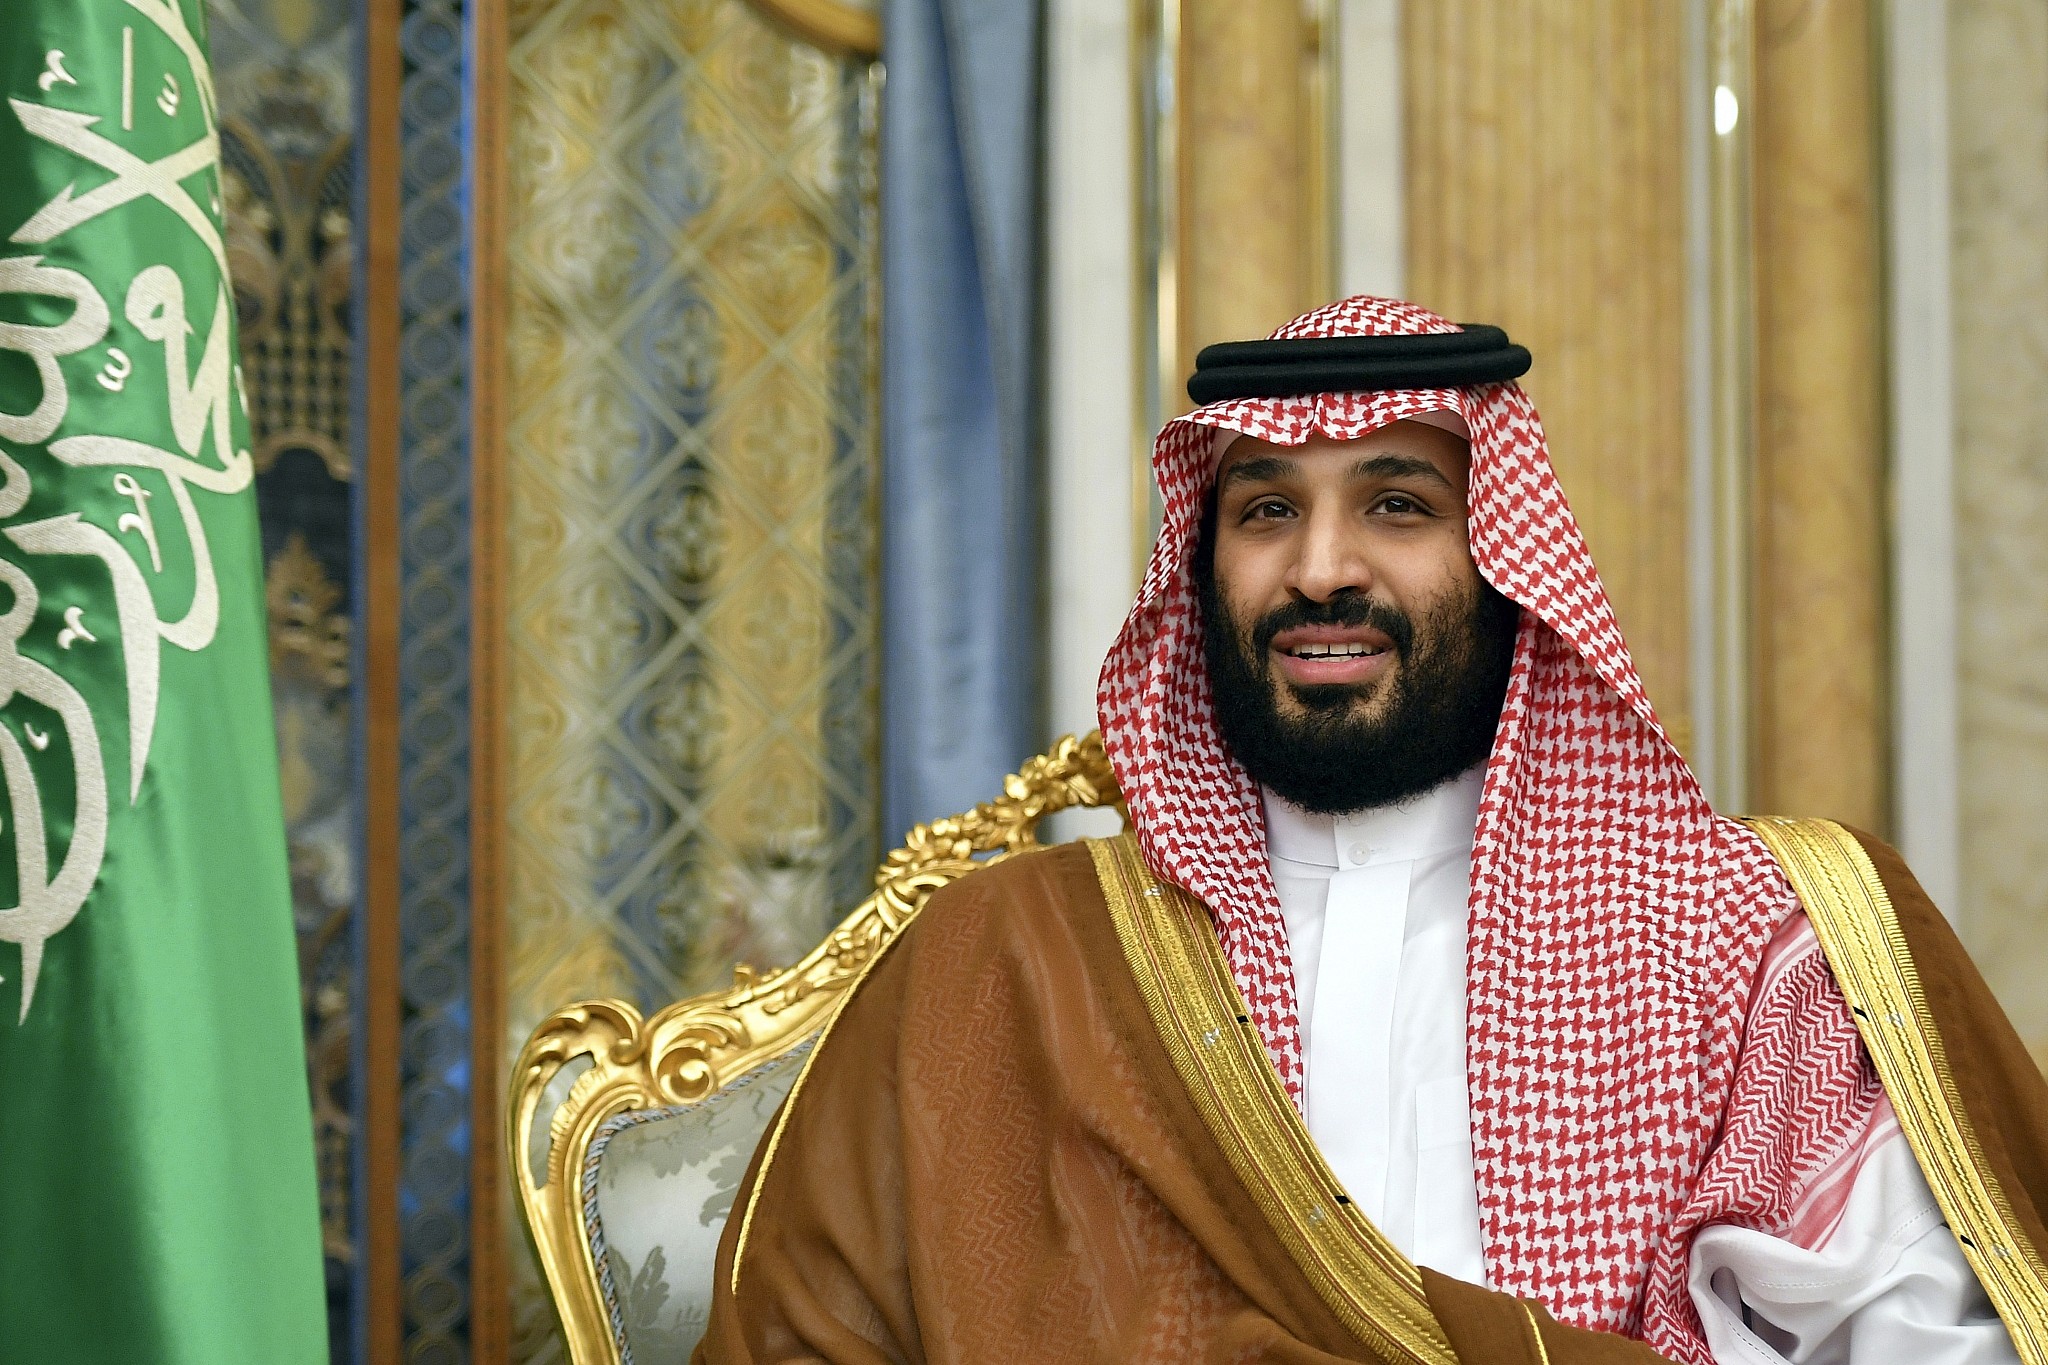 Saudi Arabia silent over UAE-Israel deal, but covert ties under focus The Times of Israel